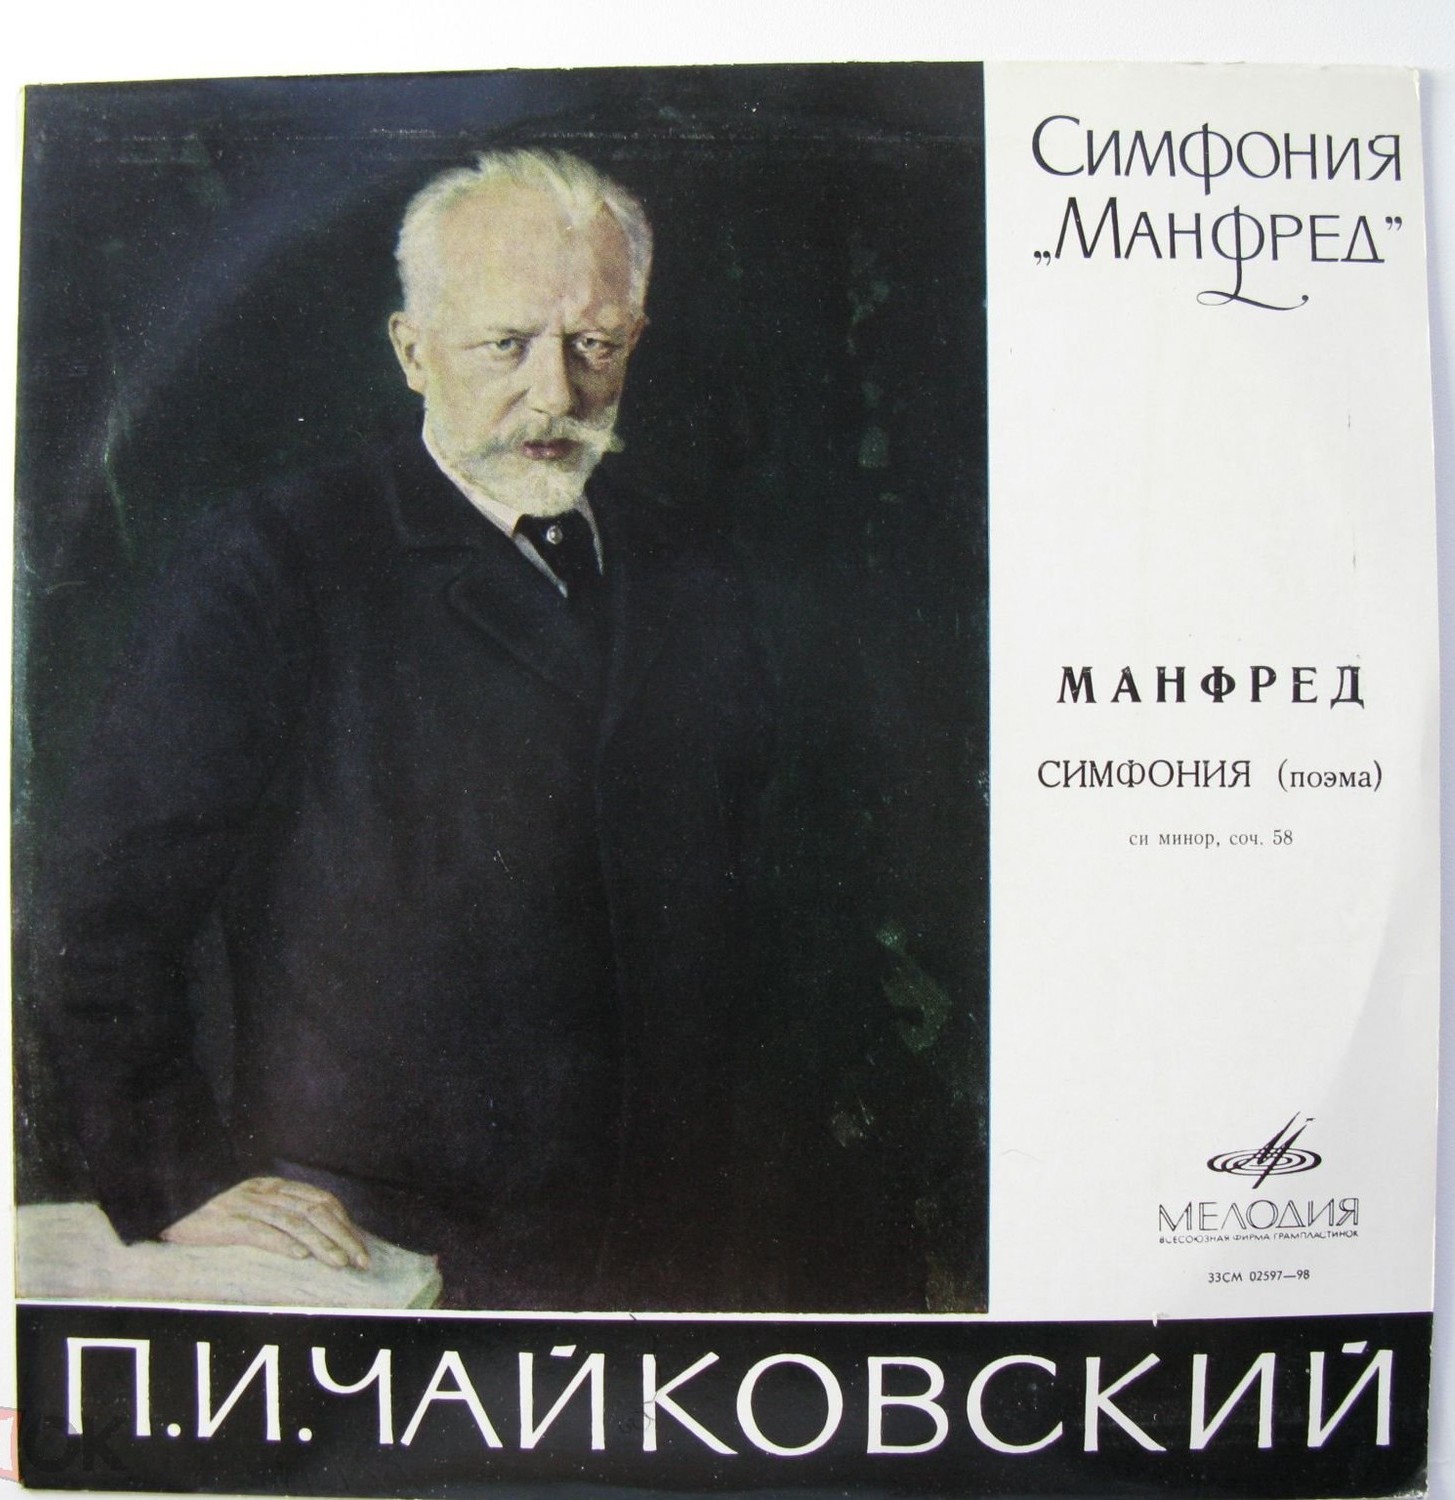 П. Чайковский: «Манфред» (Е. Светланов)